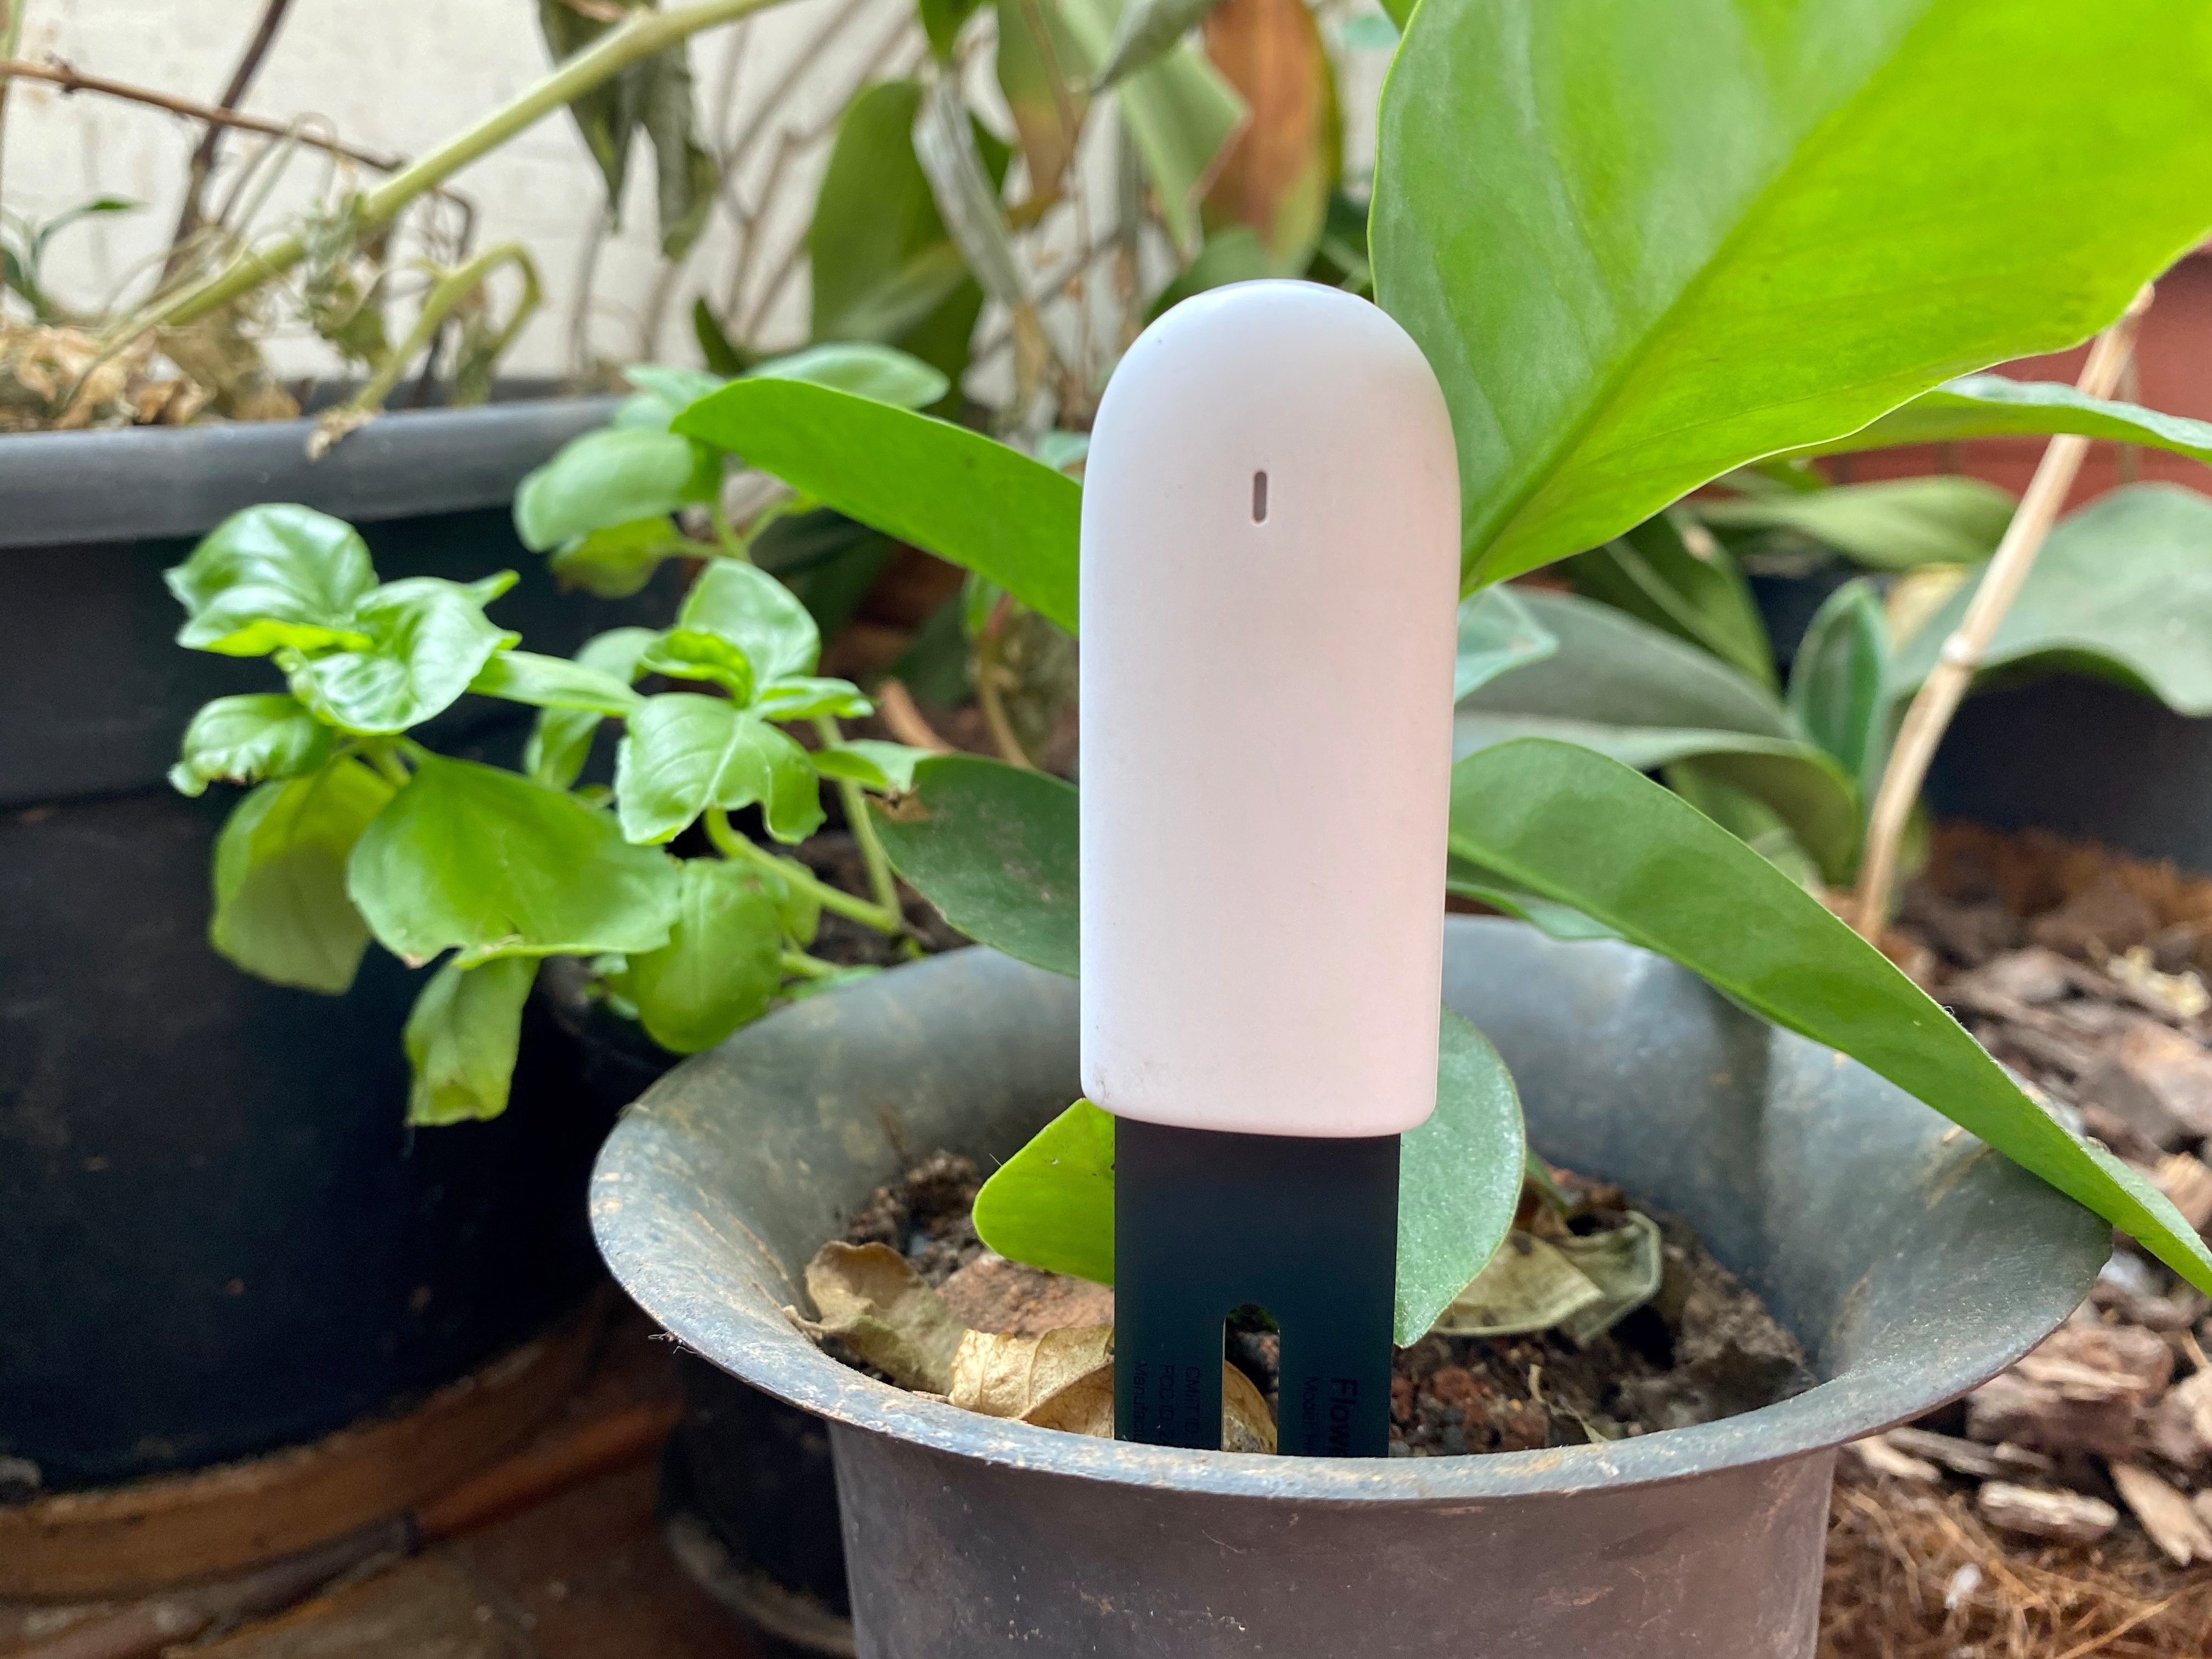 fantasma Turbina arrebatar Flower Care: sensor da Xiaomi ajuda com plantas, mas não é 100% confiável